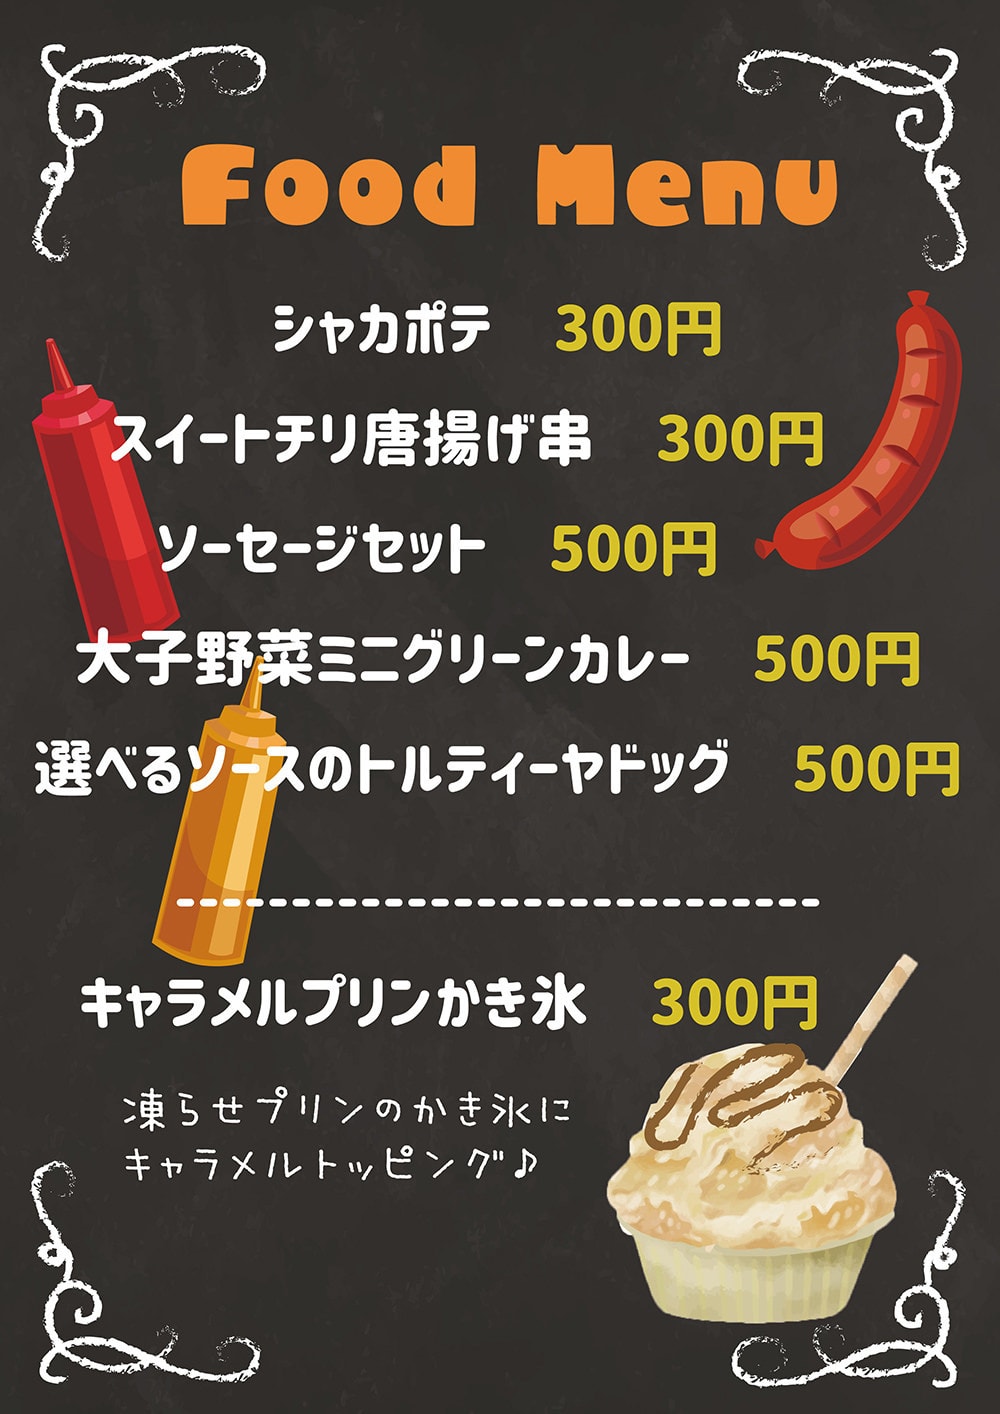 咲くカフェTruck at 大子ラクダマーケット food menu